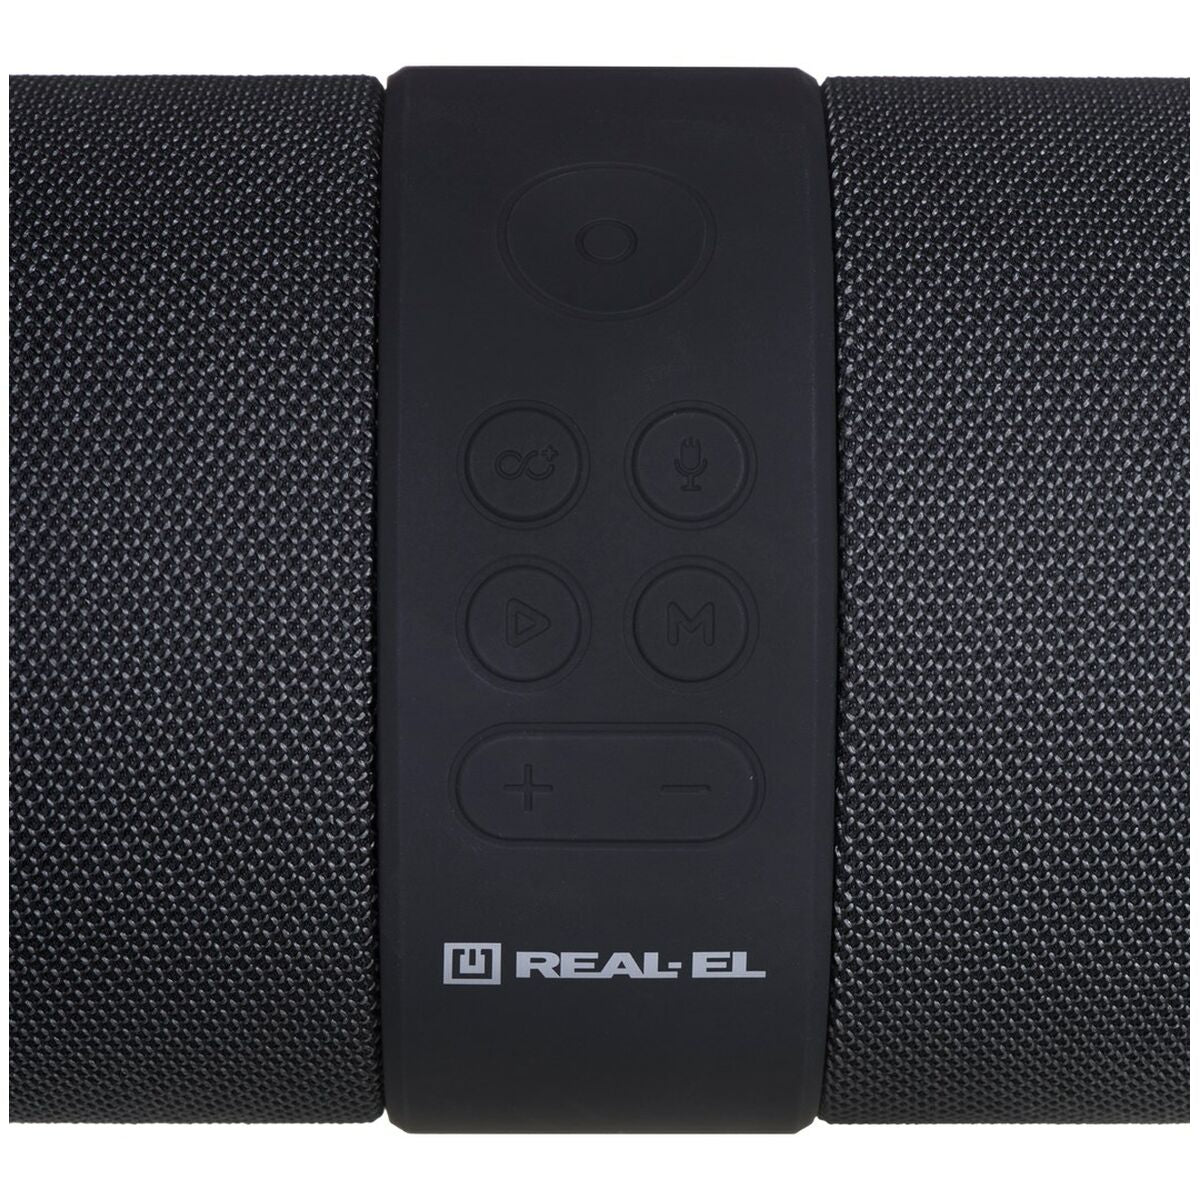 Bluetooth-luidsprekers Real-El EL121600011                     Zwart Multicolour 24 W